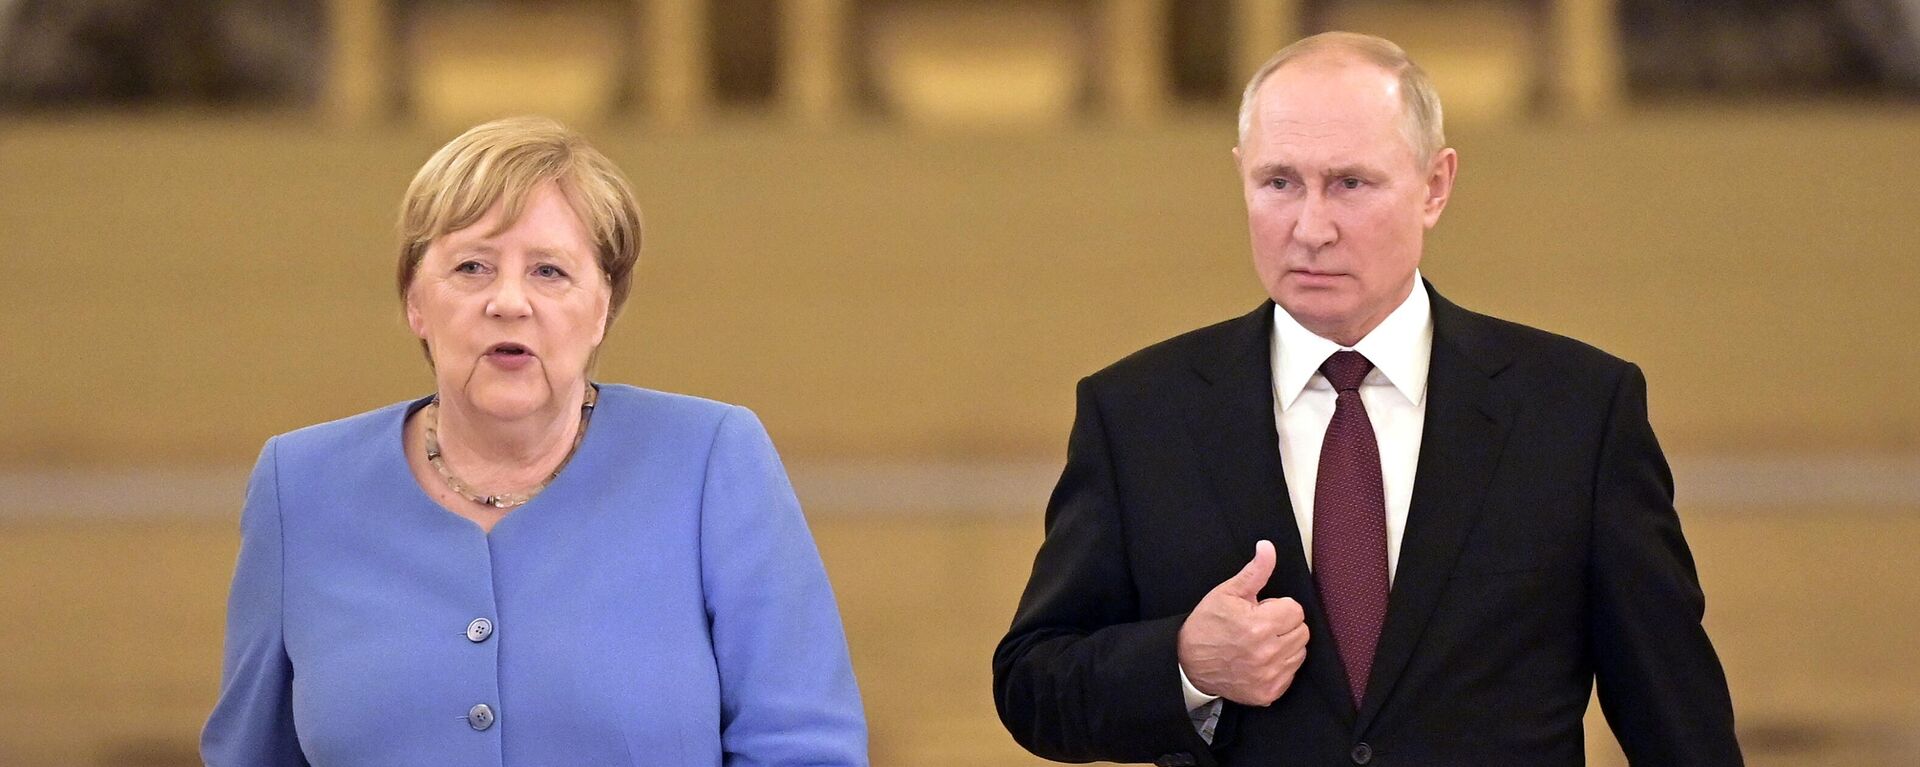 Встреча президента РФ Владимира Путина с канцлером Германии Ангелой Меркель в Москве - Sputnik Латвия, 1920, 20.08.2021